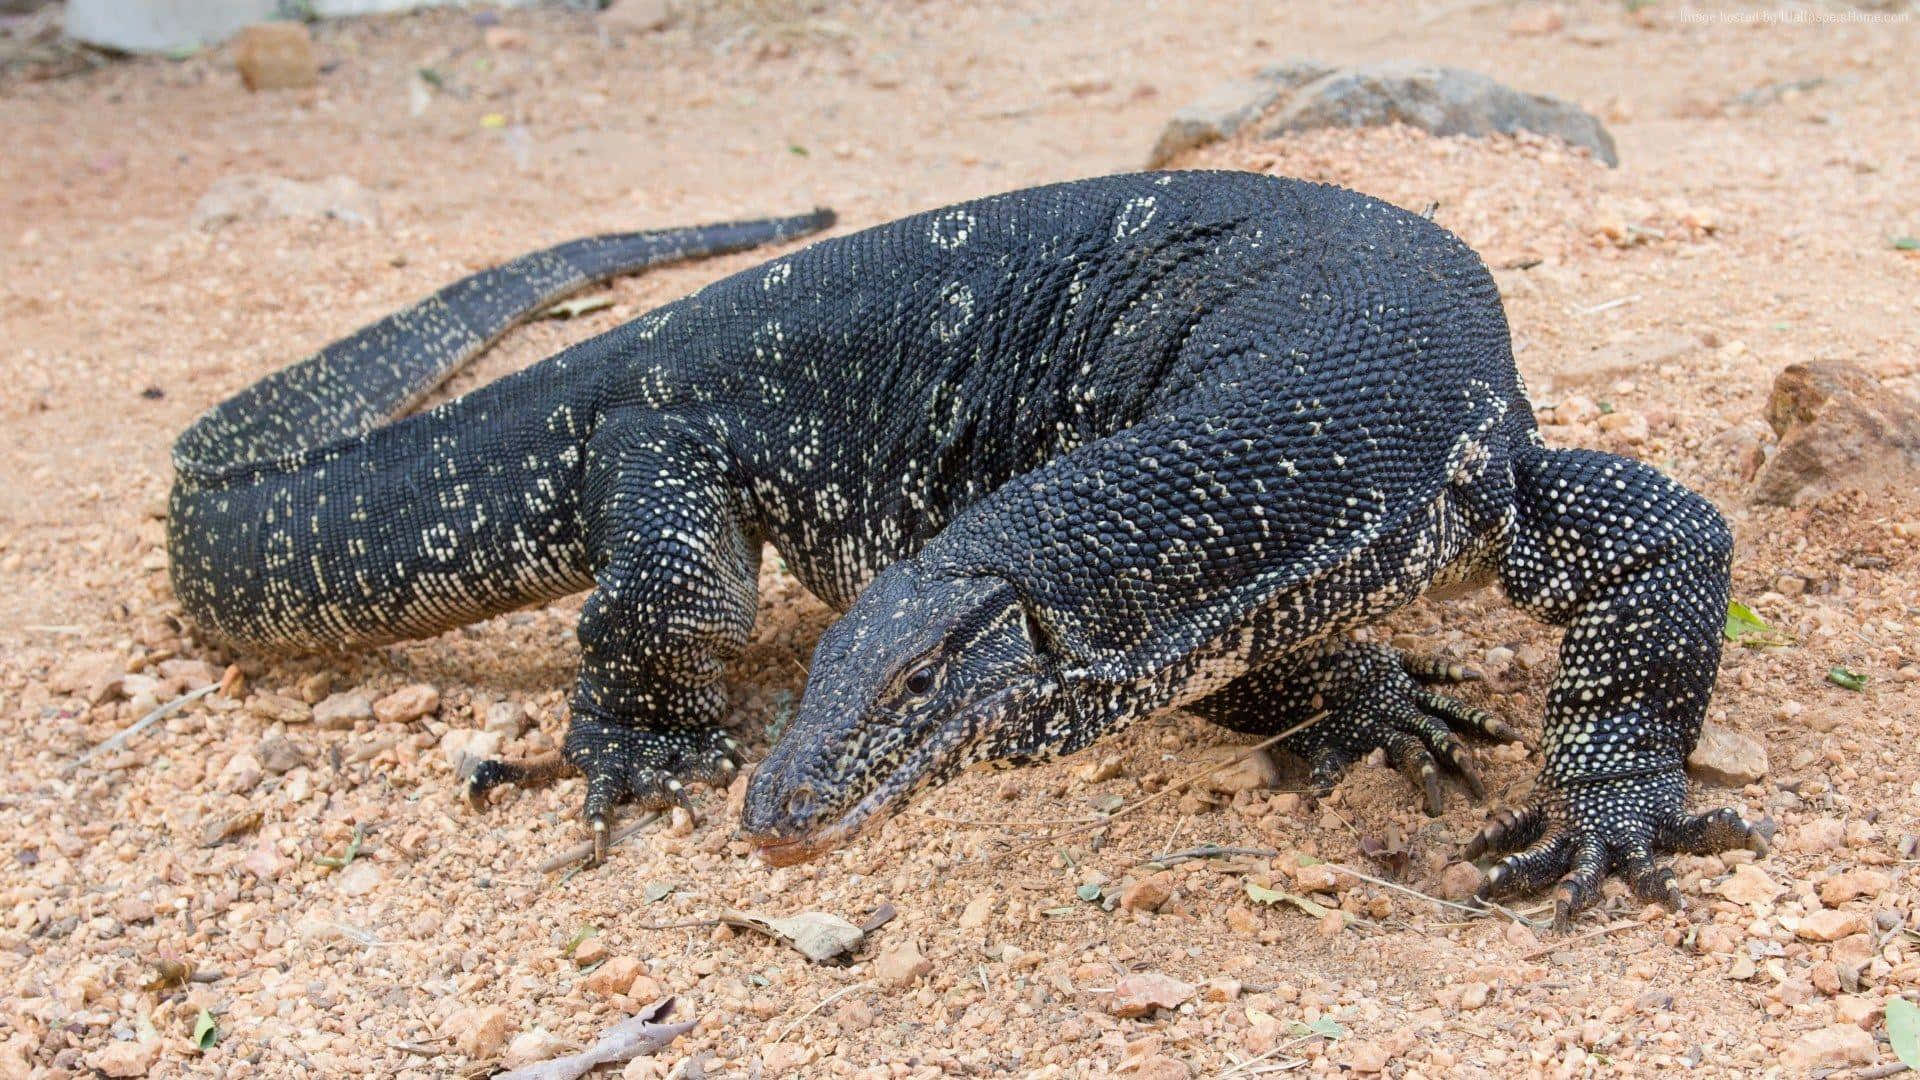 The Intimidating Komodo Dragon